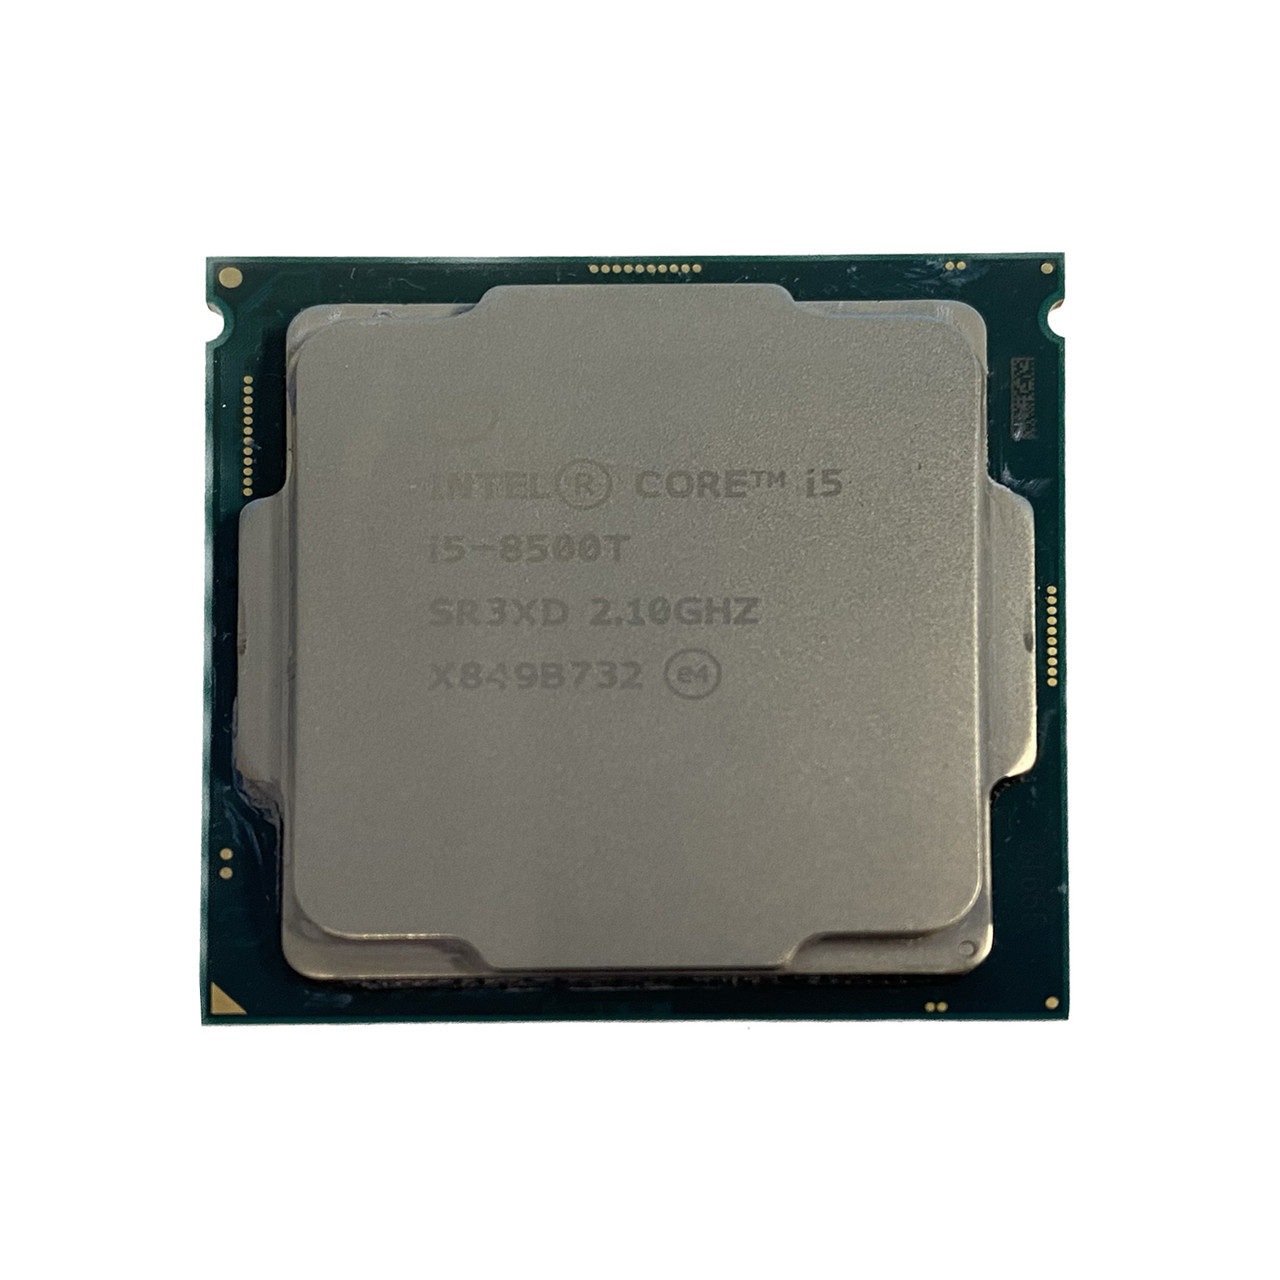 Intel SR3XD | Core 6C i5-8500T 2.10GHz 9MB Processor - Serverworlds